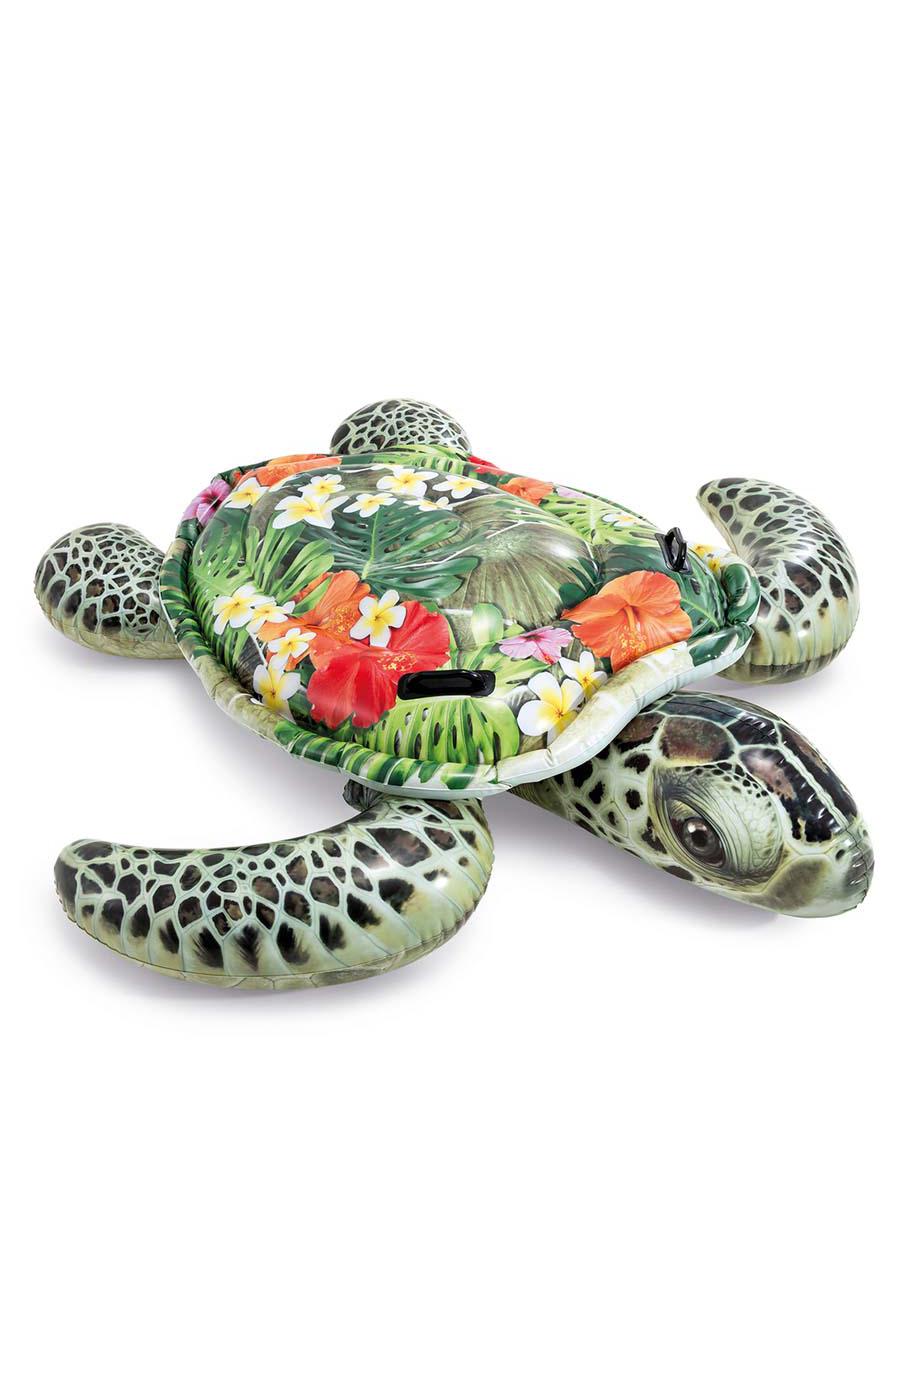 Intex Realistic Sea Turtle Ride-On Pool Float; image 3 of 3